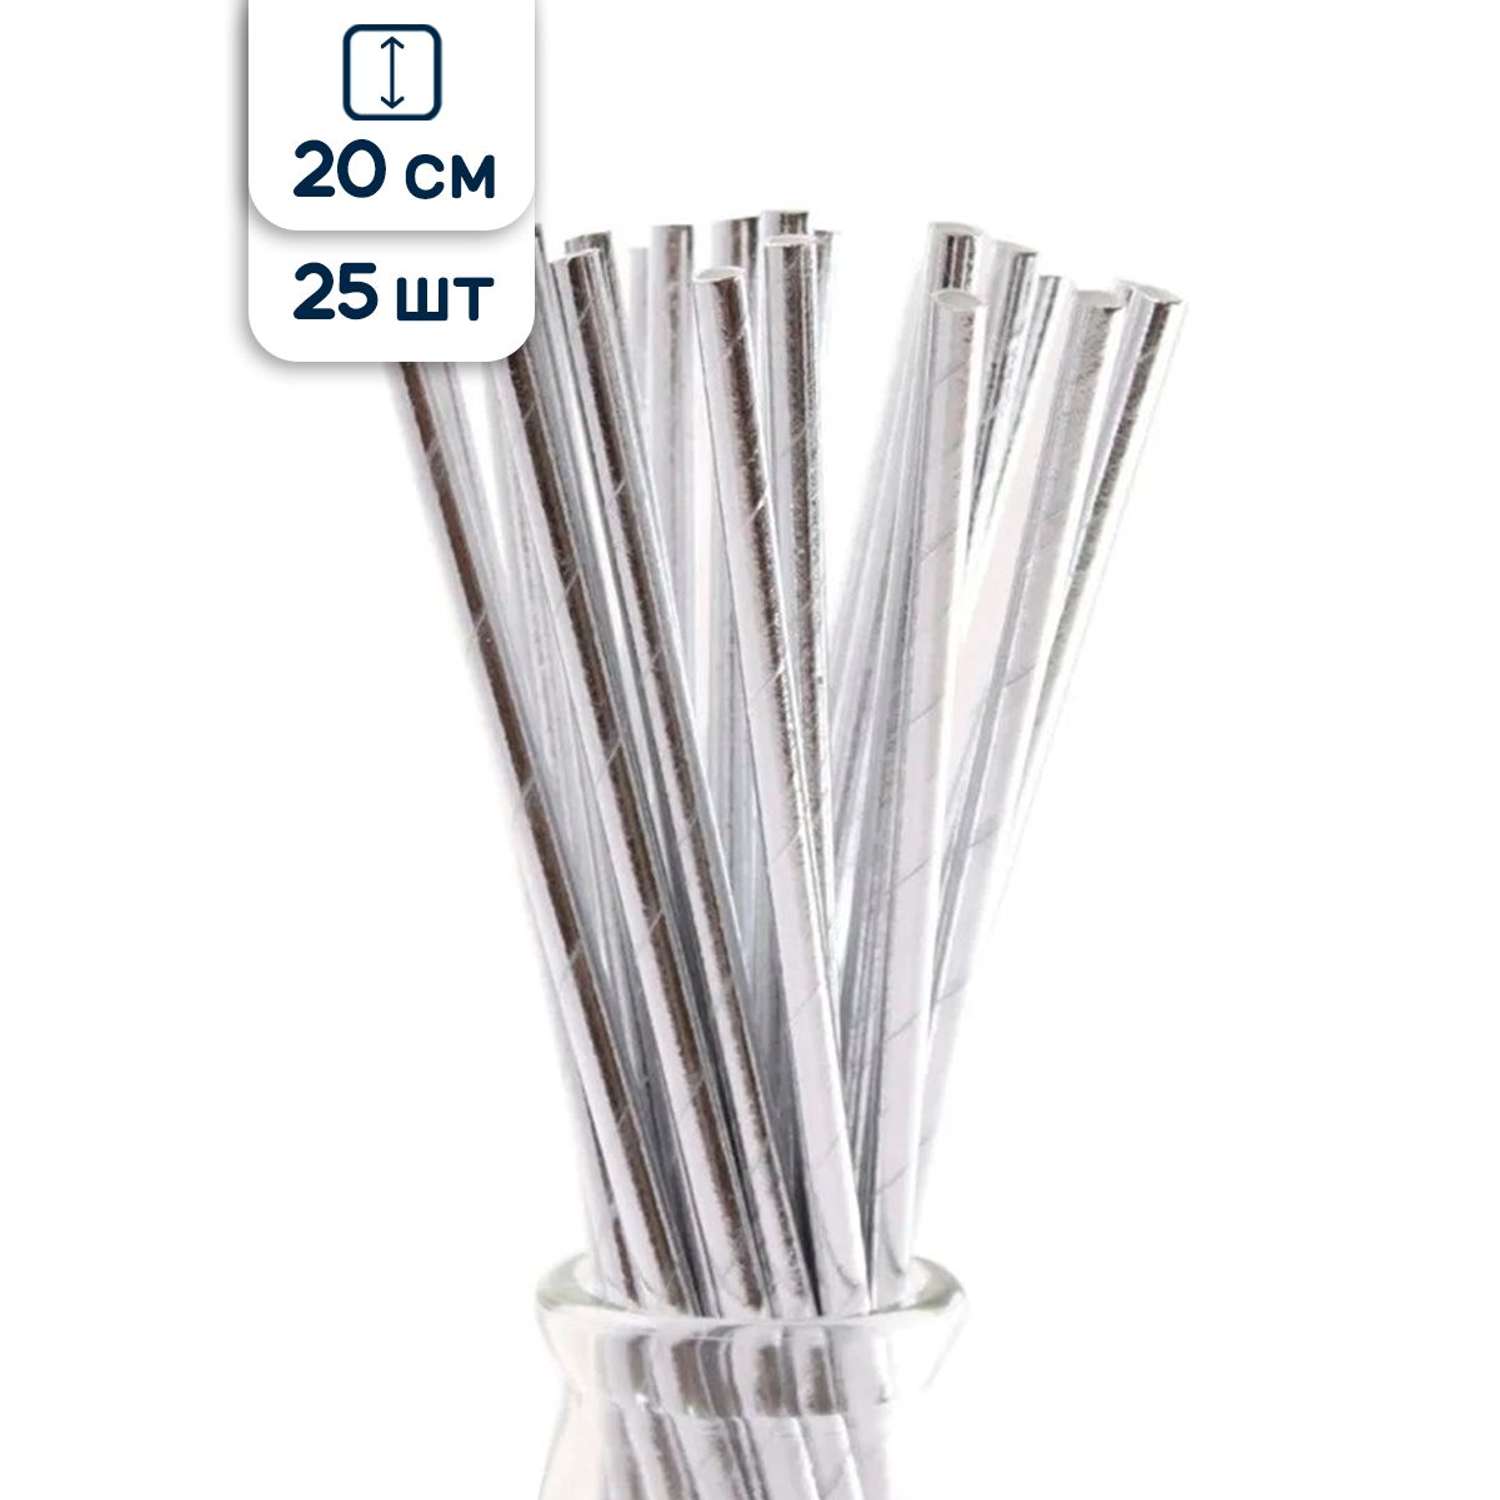 Трубочки для коктейлей Riota фольгированные одноразовые серебро 20 см 25 шт - фото 1